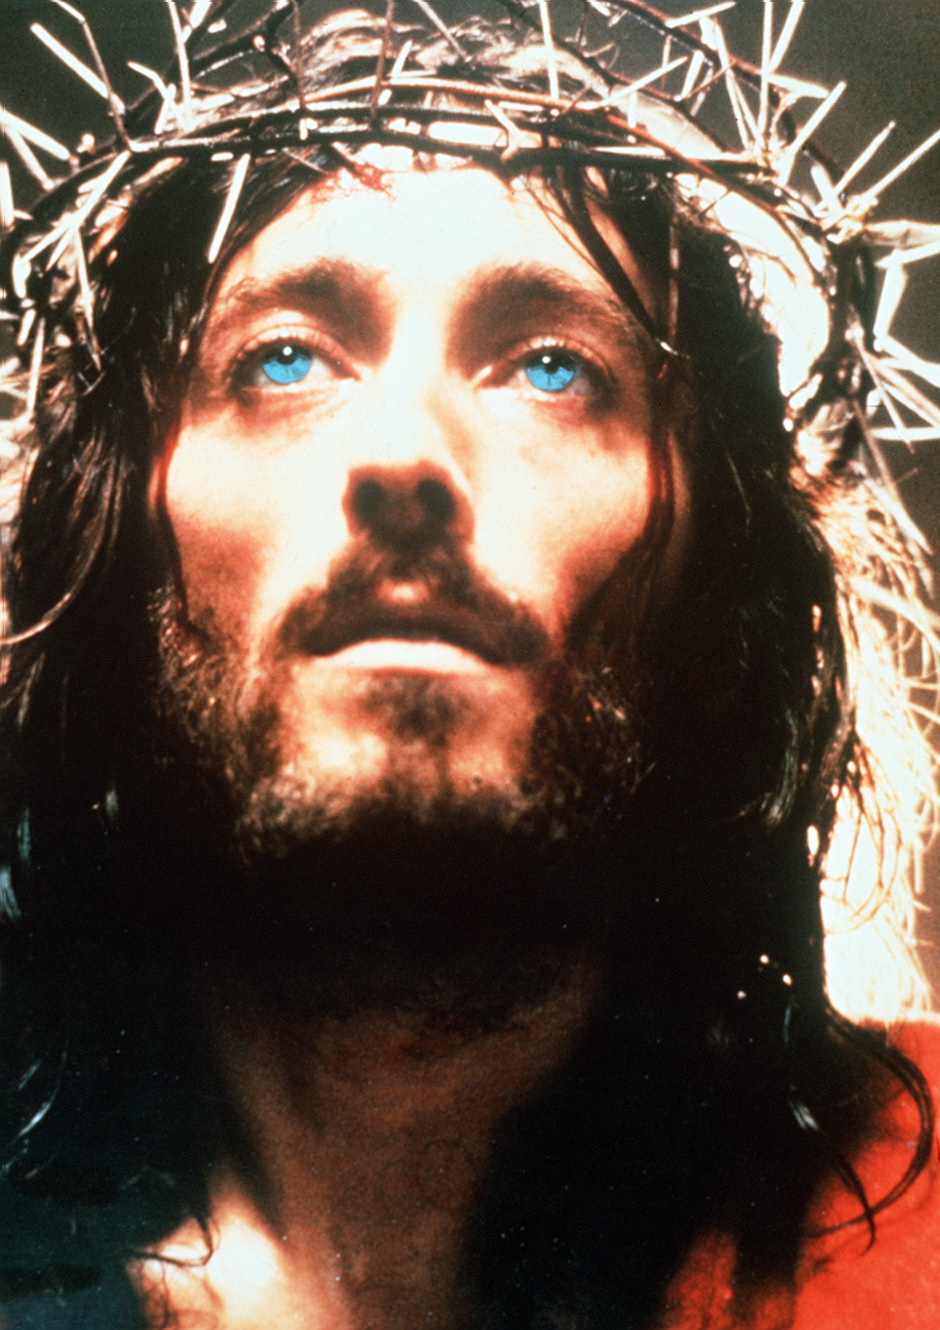 Începând de mâine, de la 20:30, Antena 1 difuzează mini seria Iisus din Nazareth, produsă de Franco Zeffirelli